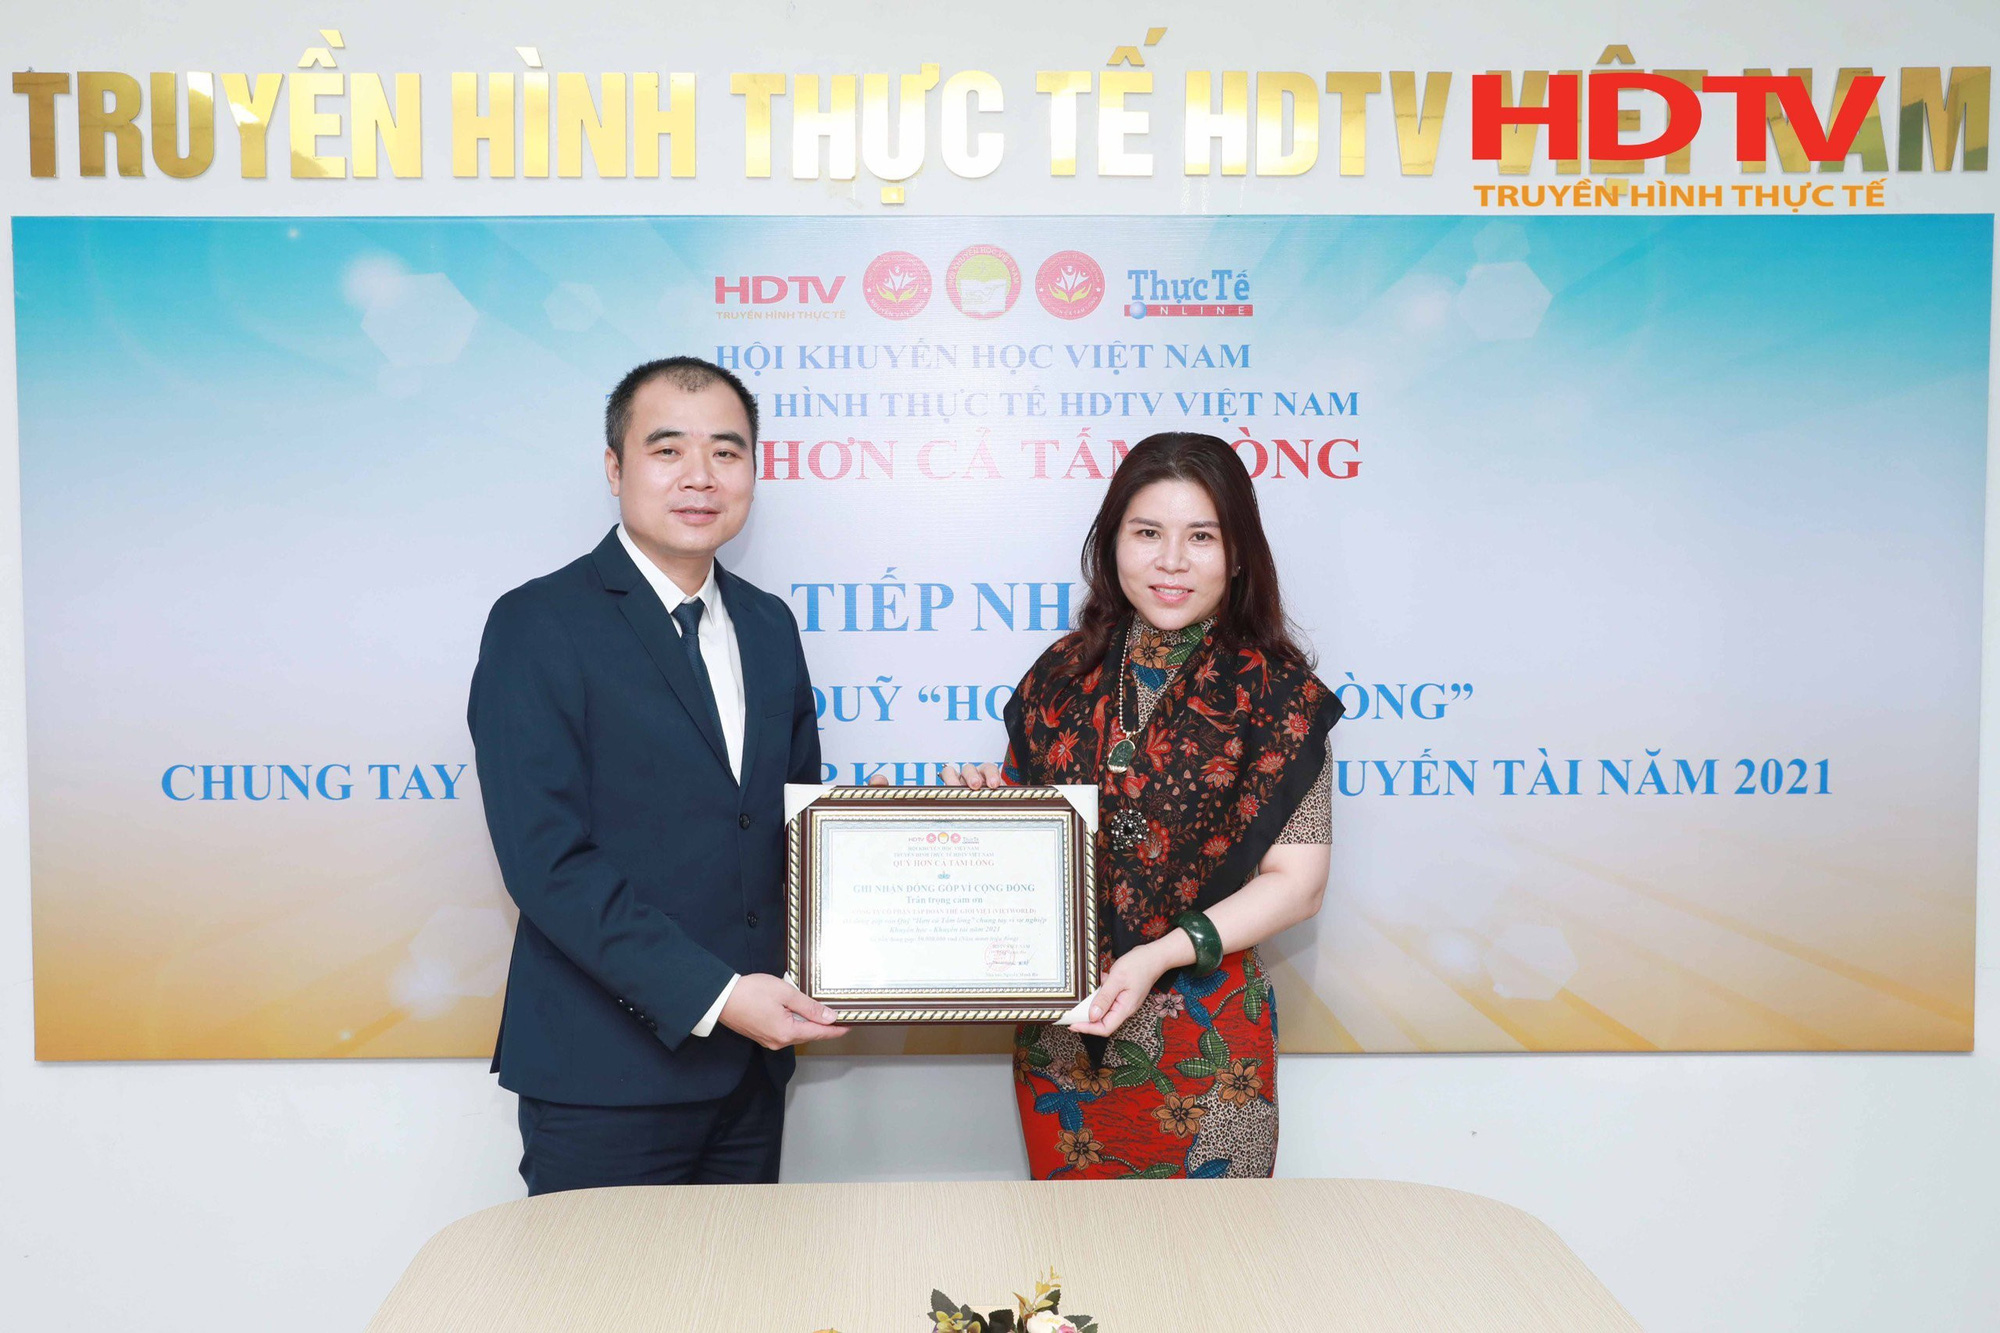 HDTV Việt Nam thực hiện công tác thiện nguyện - Khuyến học Quý 4 năm 2021 - Ảnh 3.